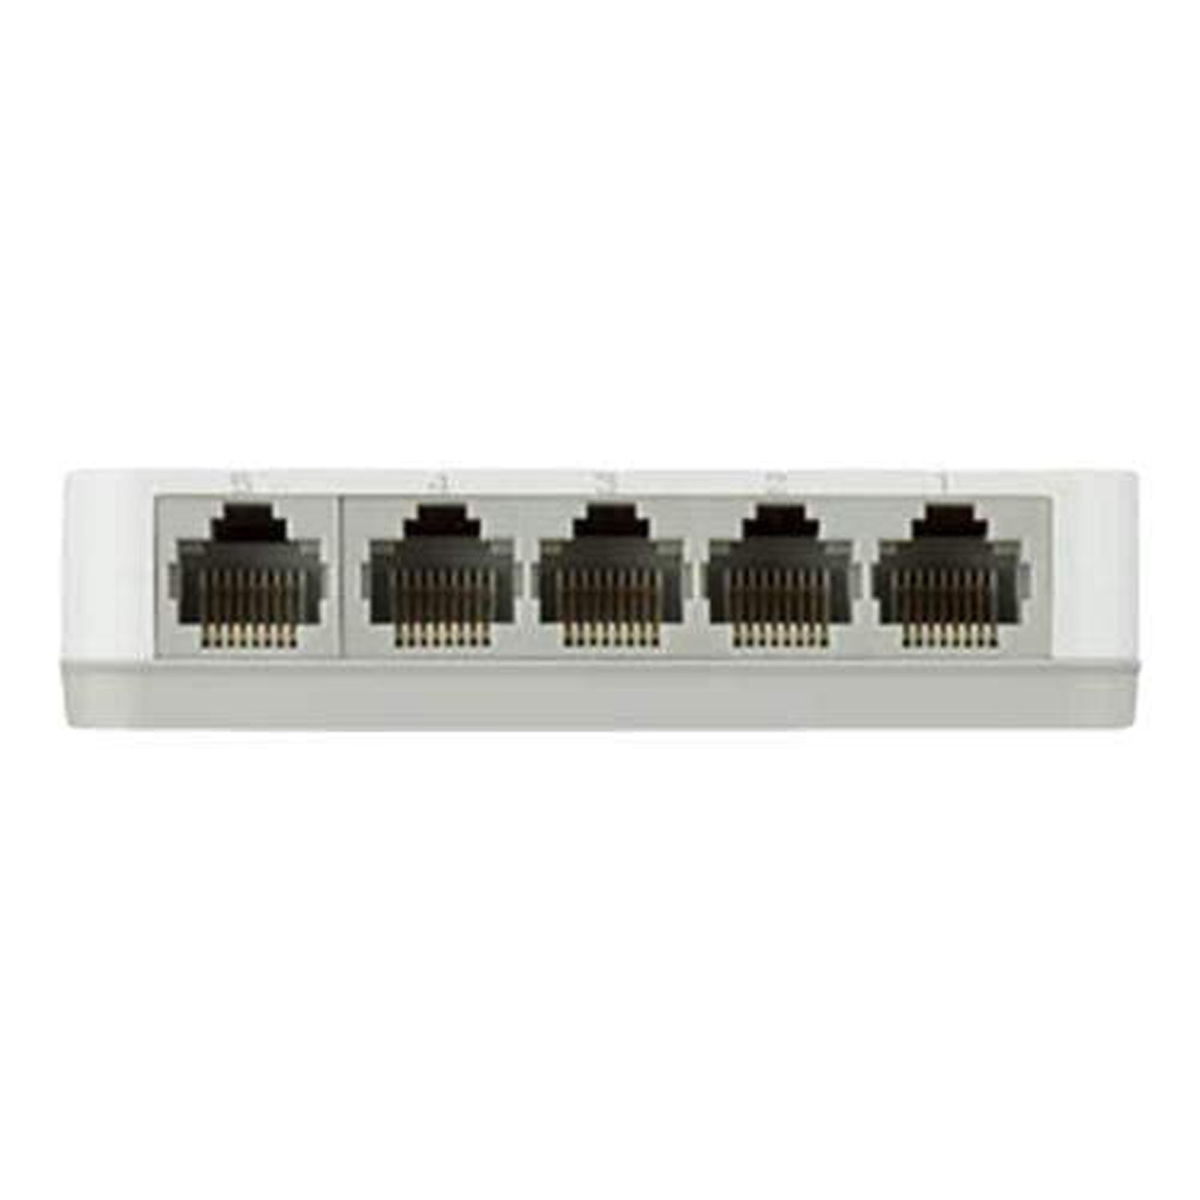 D-Link 5-Port Gigabit Desktop Switch, White, DGS-1005A